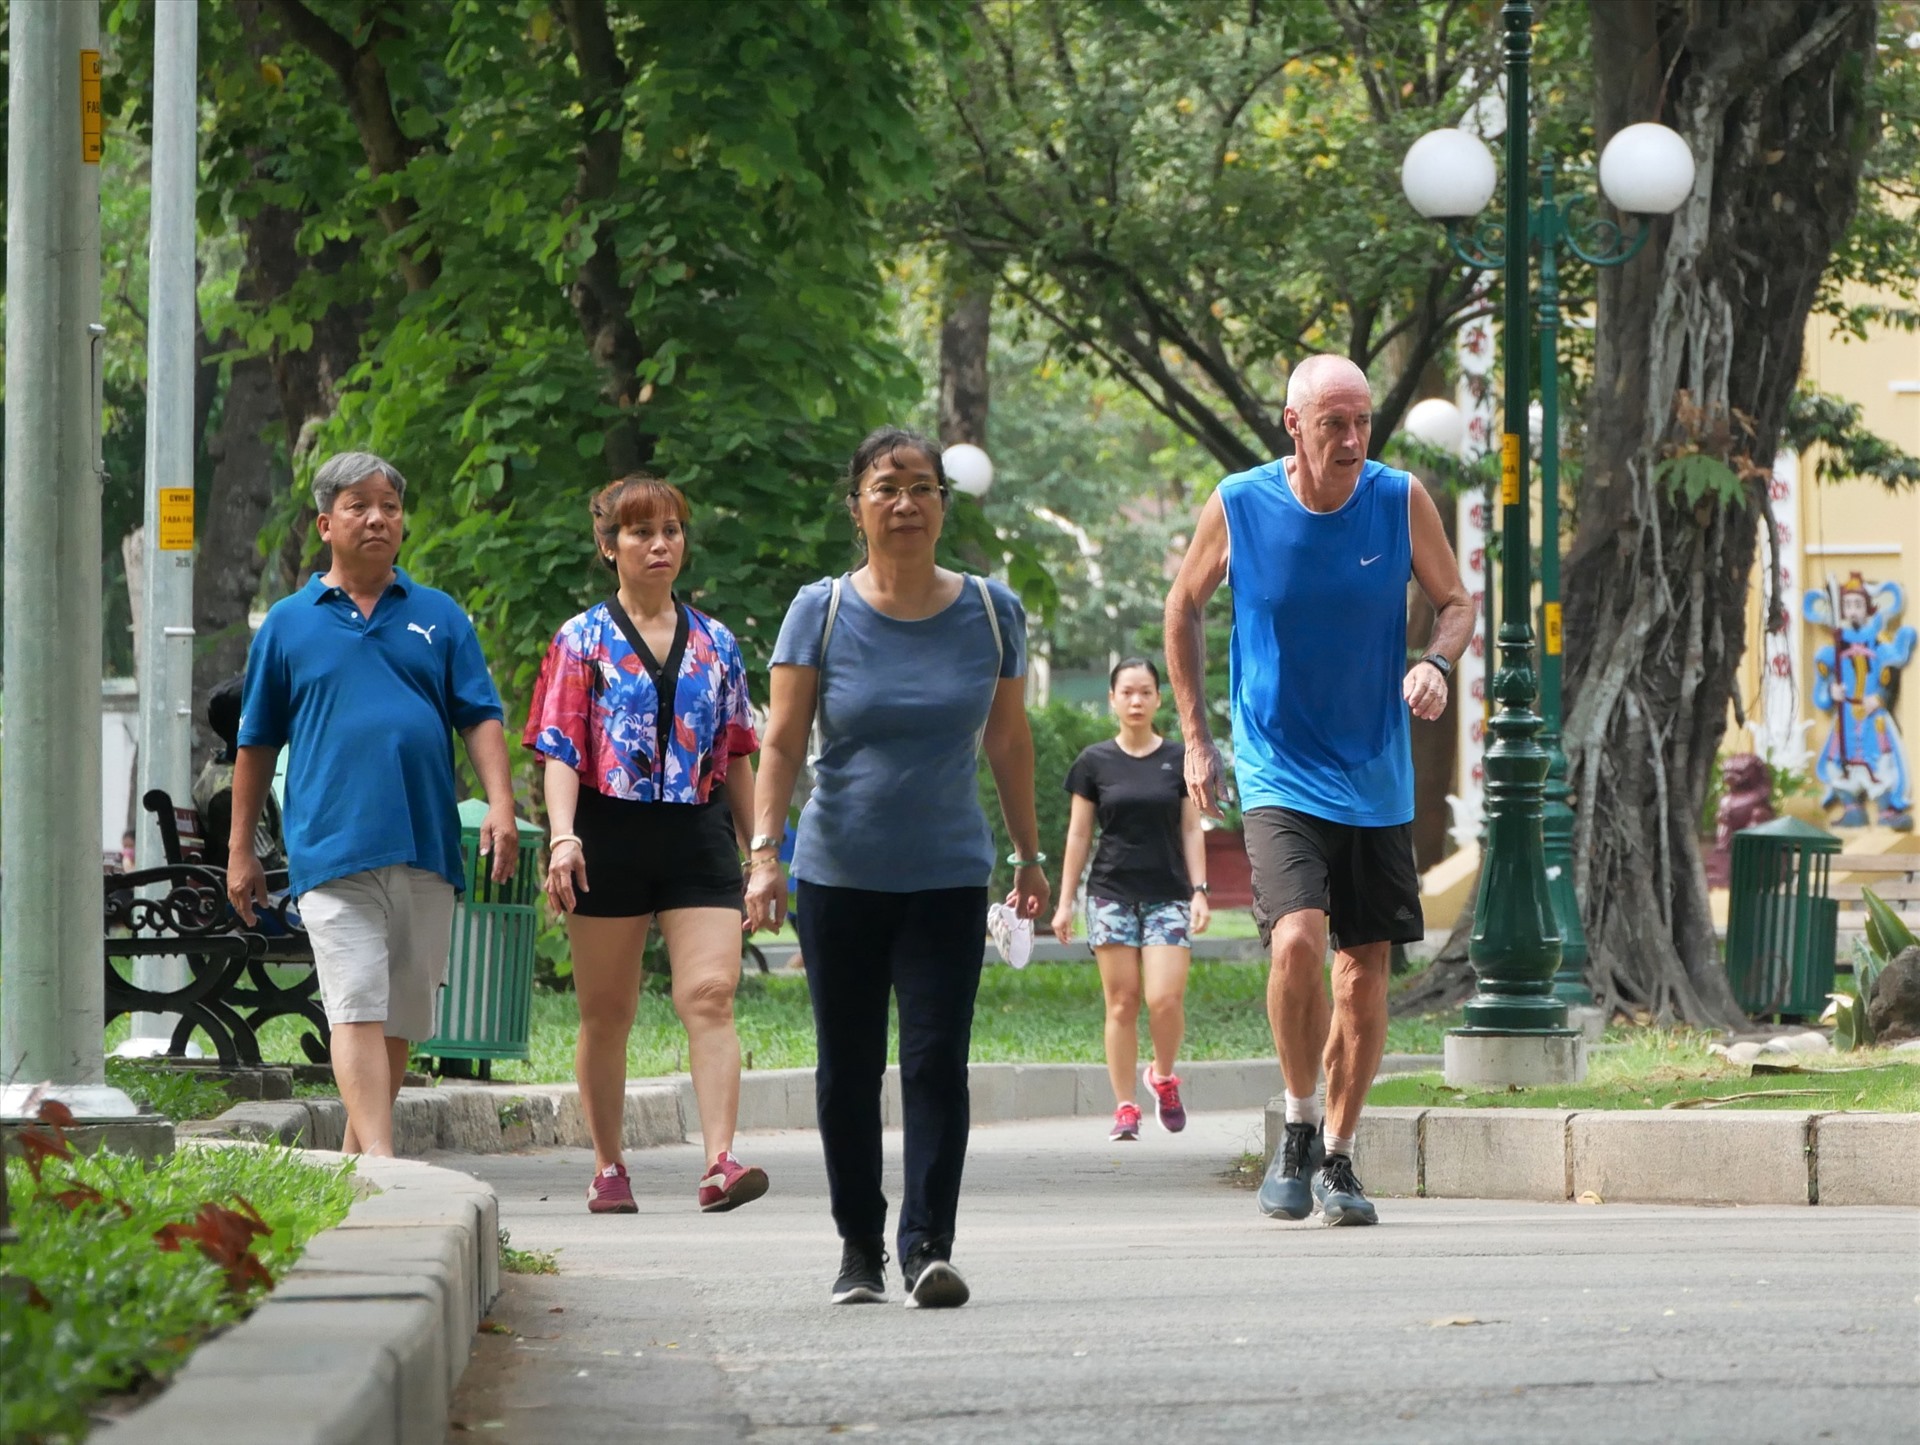 Hầu hết những người tham gia tập thể dục chủ yếu ở độ tuổi trung niên và người già. Nhiều người nước ngoài cũng tham gia chạy bộ.